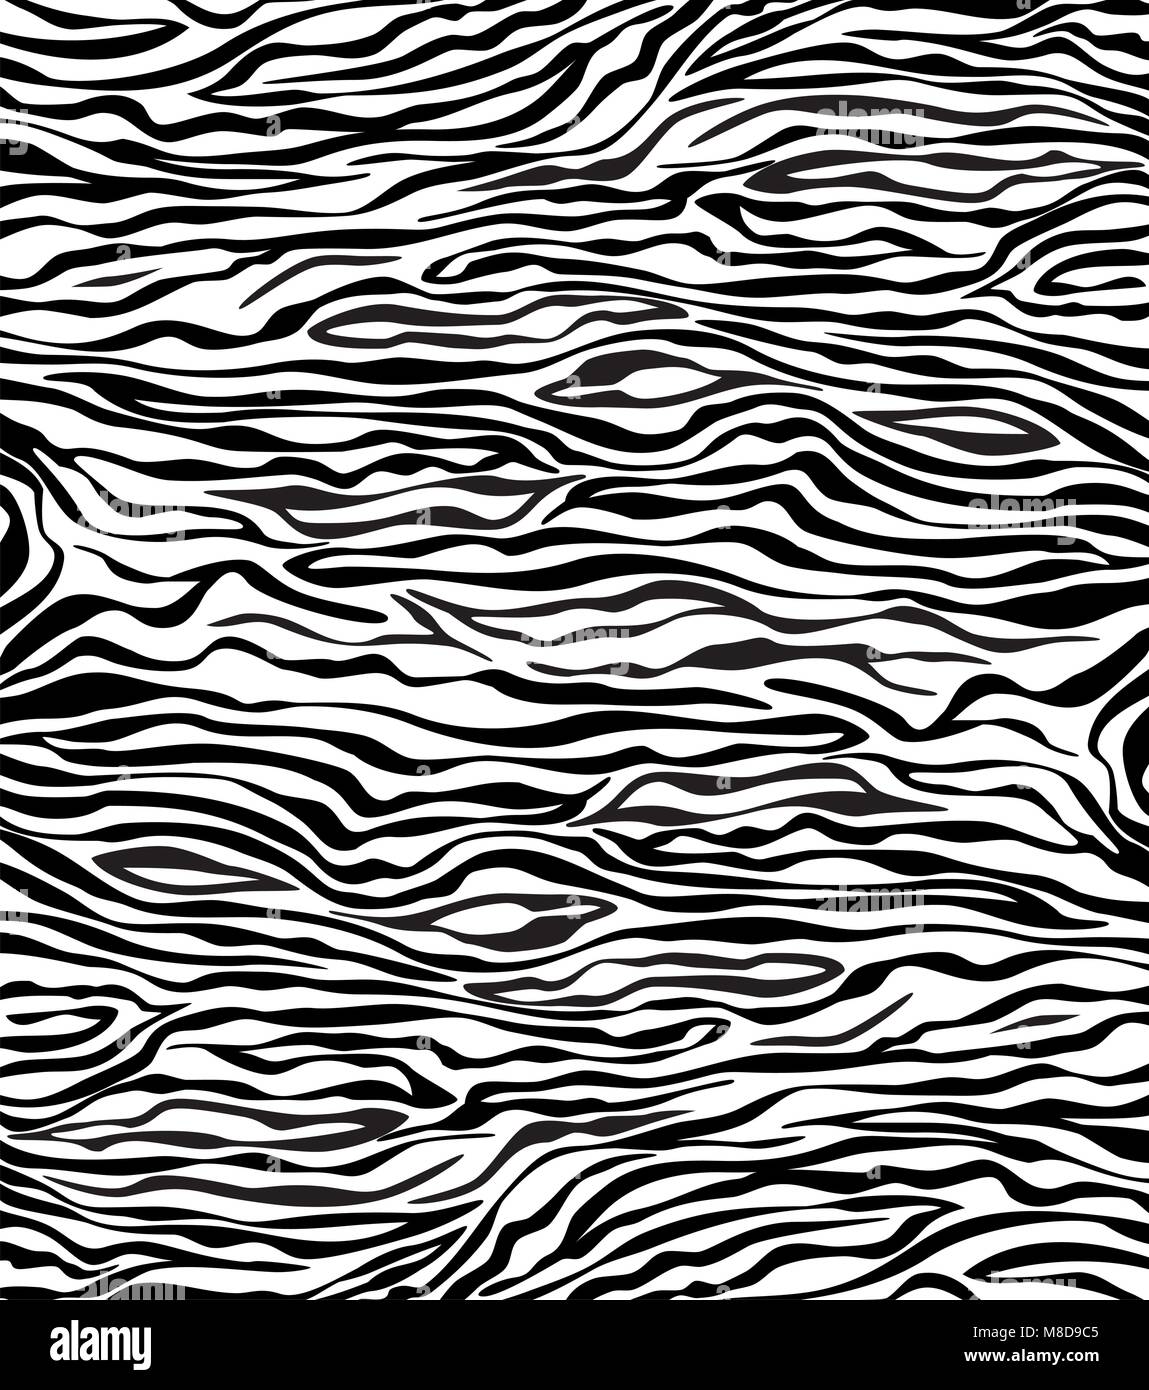 Vektor abstrakte Hautstruktur von zebra Stock Vektor